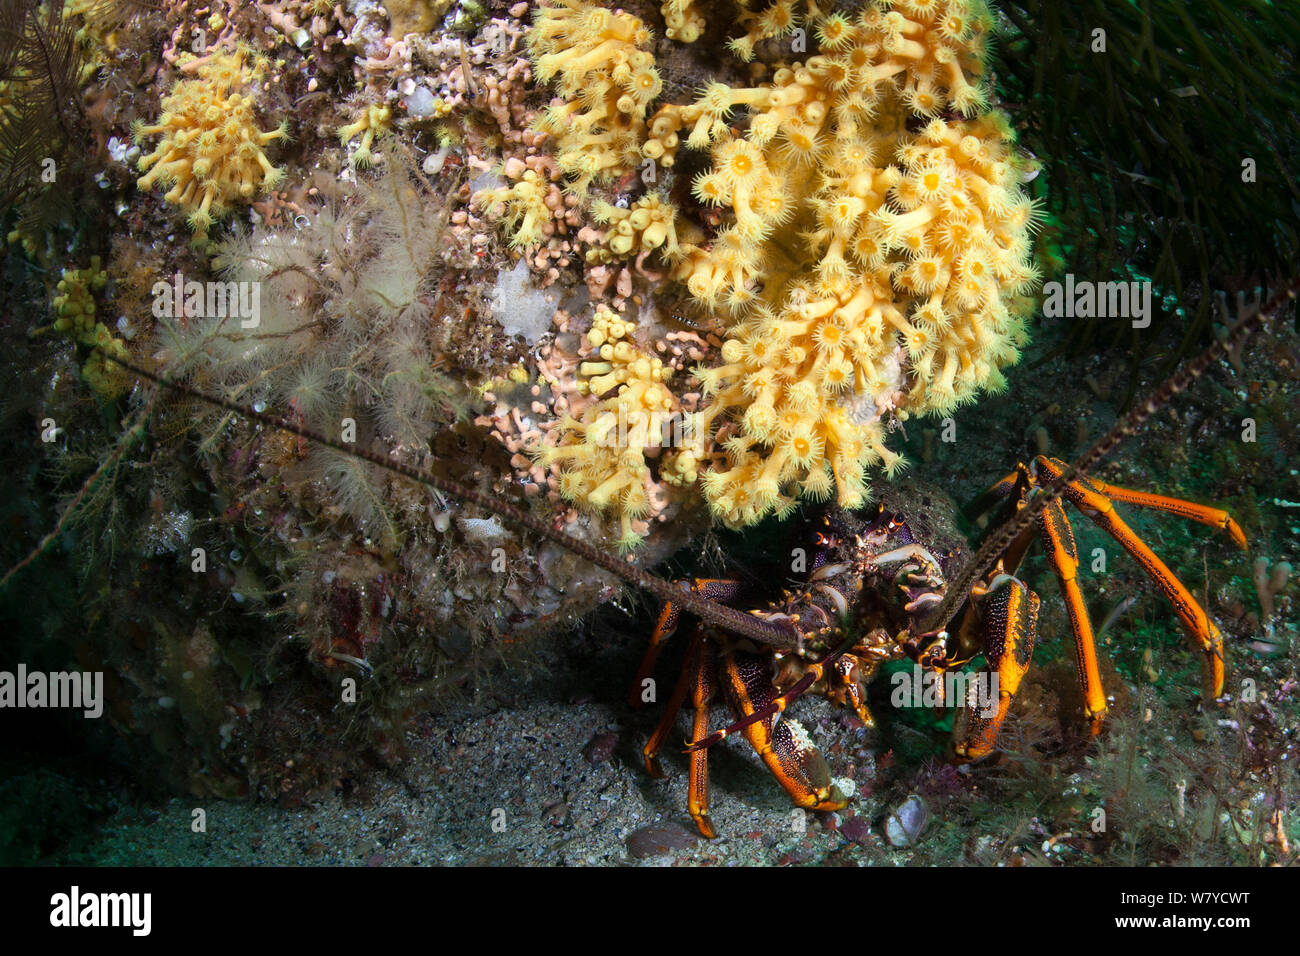 Neuseeland Krebse oder Southern Rock Lobster (Jasus edwardsii) versteckt sich unter dem gelben zoathhid Anemone (Parazoanthus streckt) im Doubtful Sound, Fiordland National Park, Neuseeland. Stockfoto